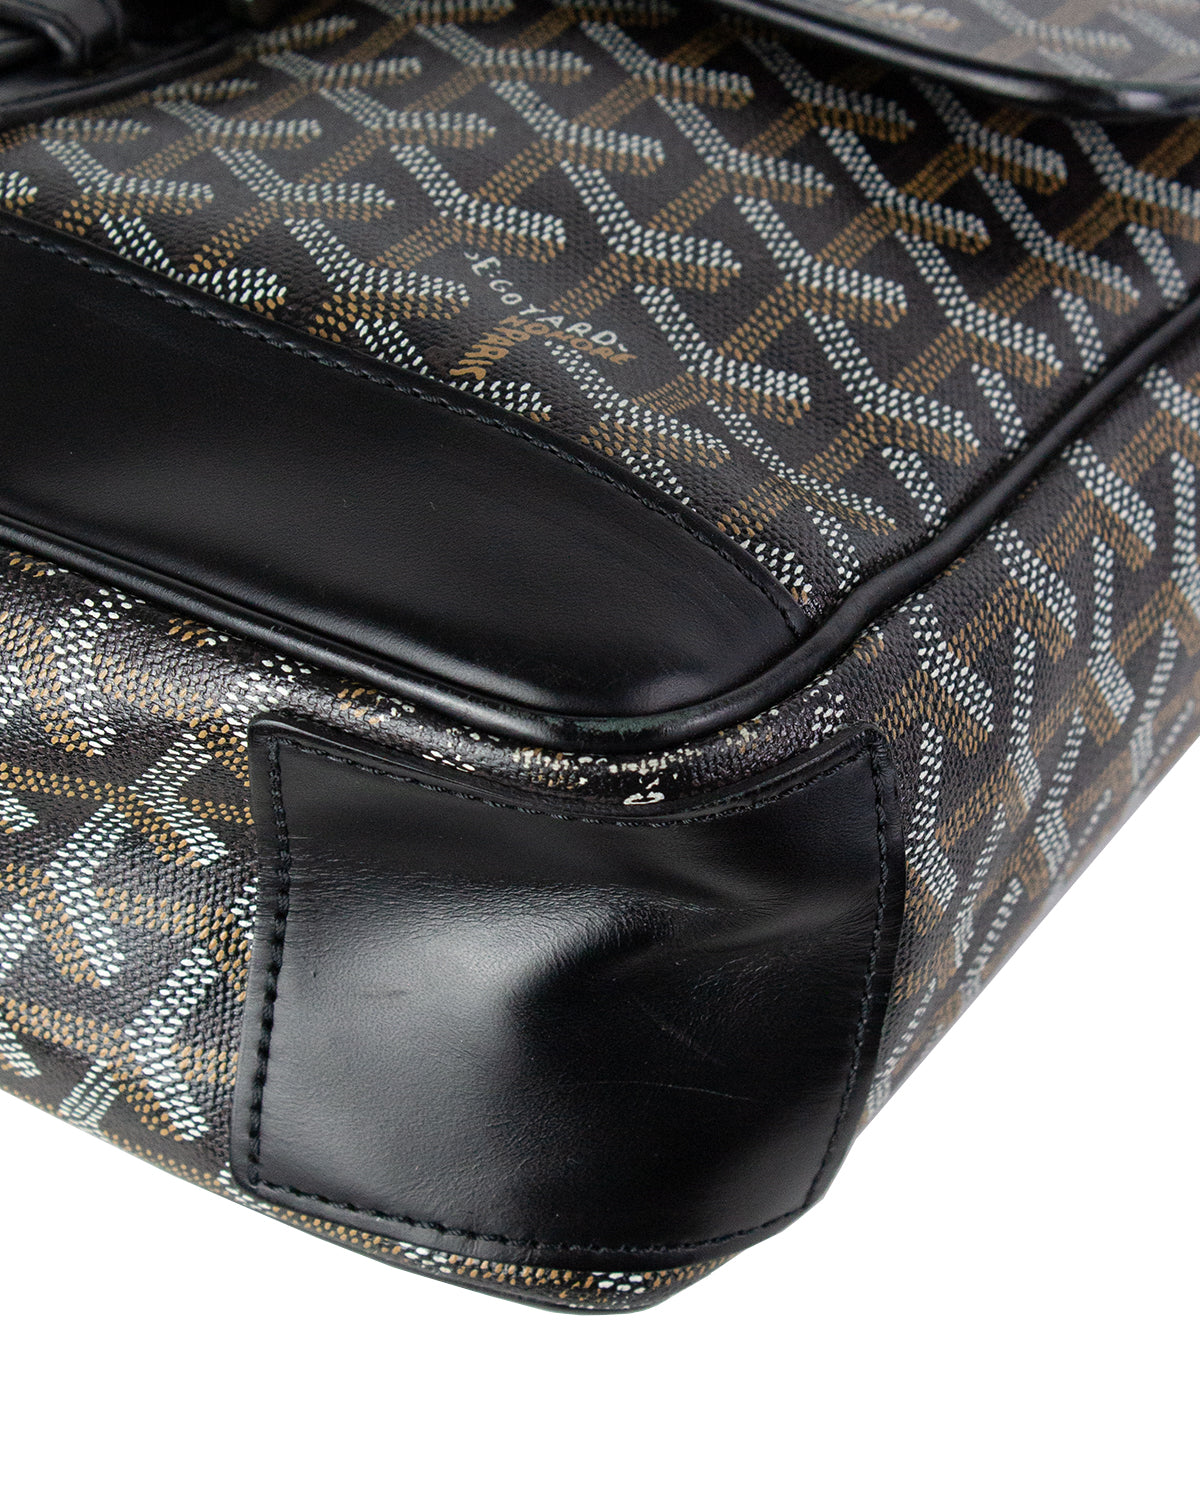 GOYARD GRAND BLEU MM PVC Leather Black Shoulder Bag Unisex Used F